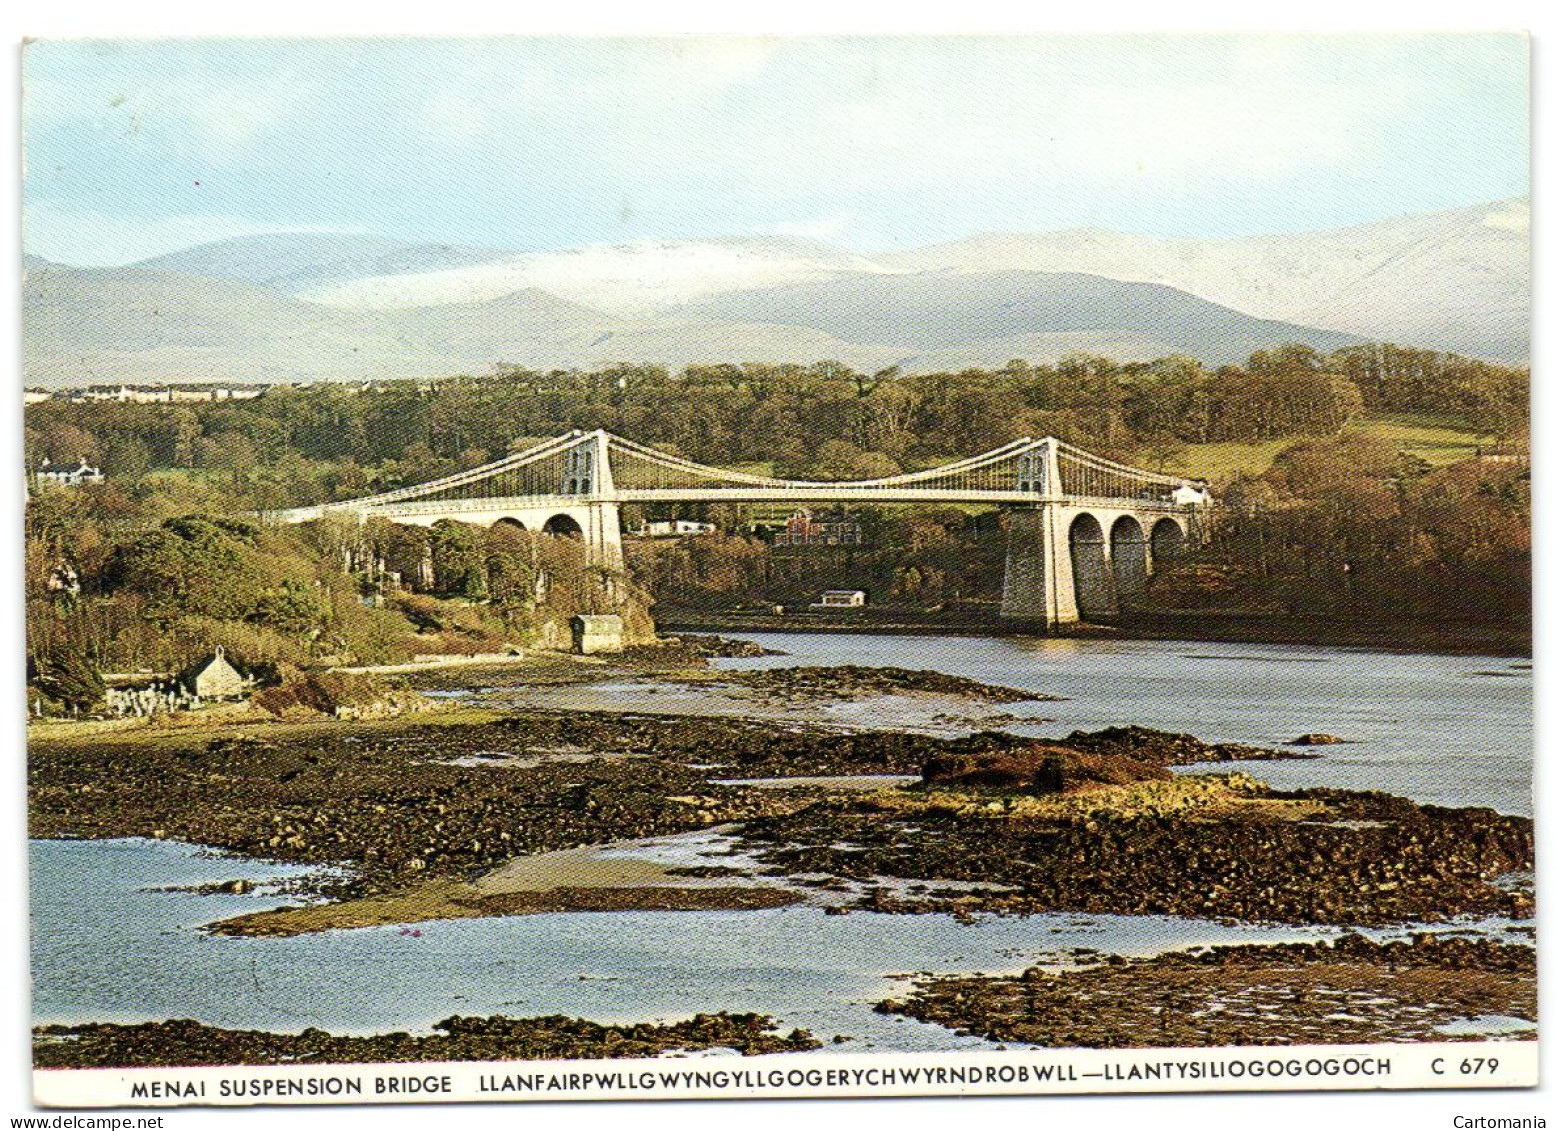 Menai Suspension Bridge - Llanfairpwllgwyngyllgogerychwyrndrobwll - Llantysiliogogogoch - Anglesey